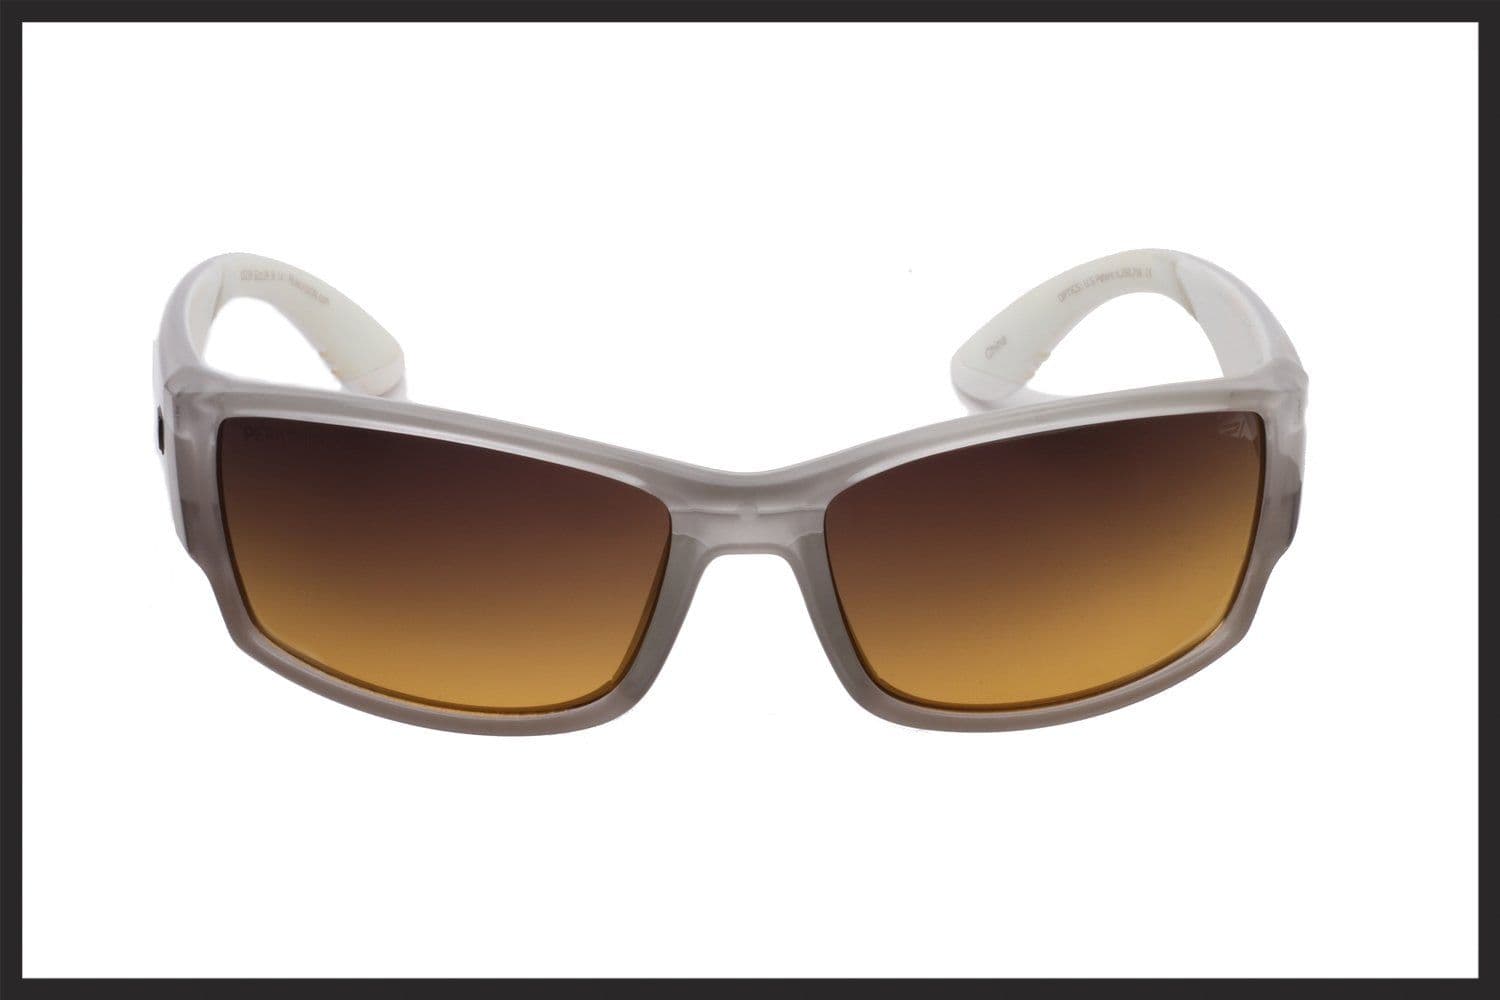 Peakvision LX2 Sunglasses